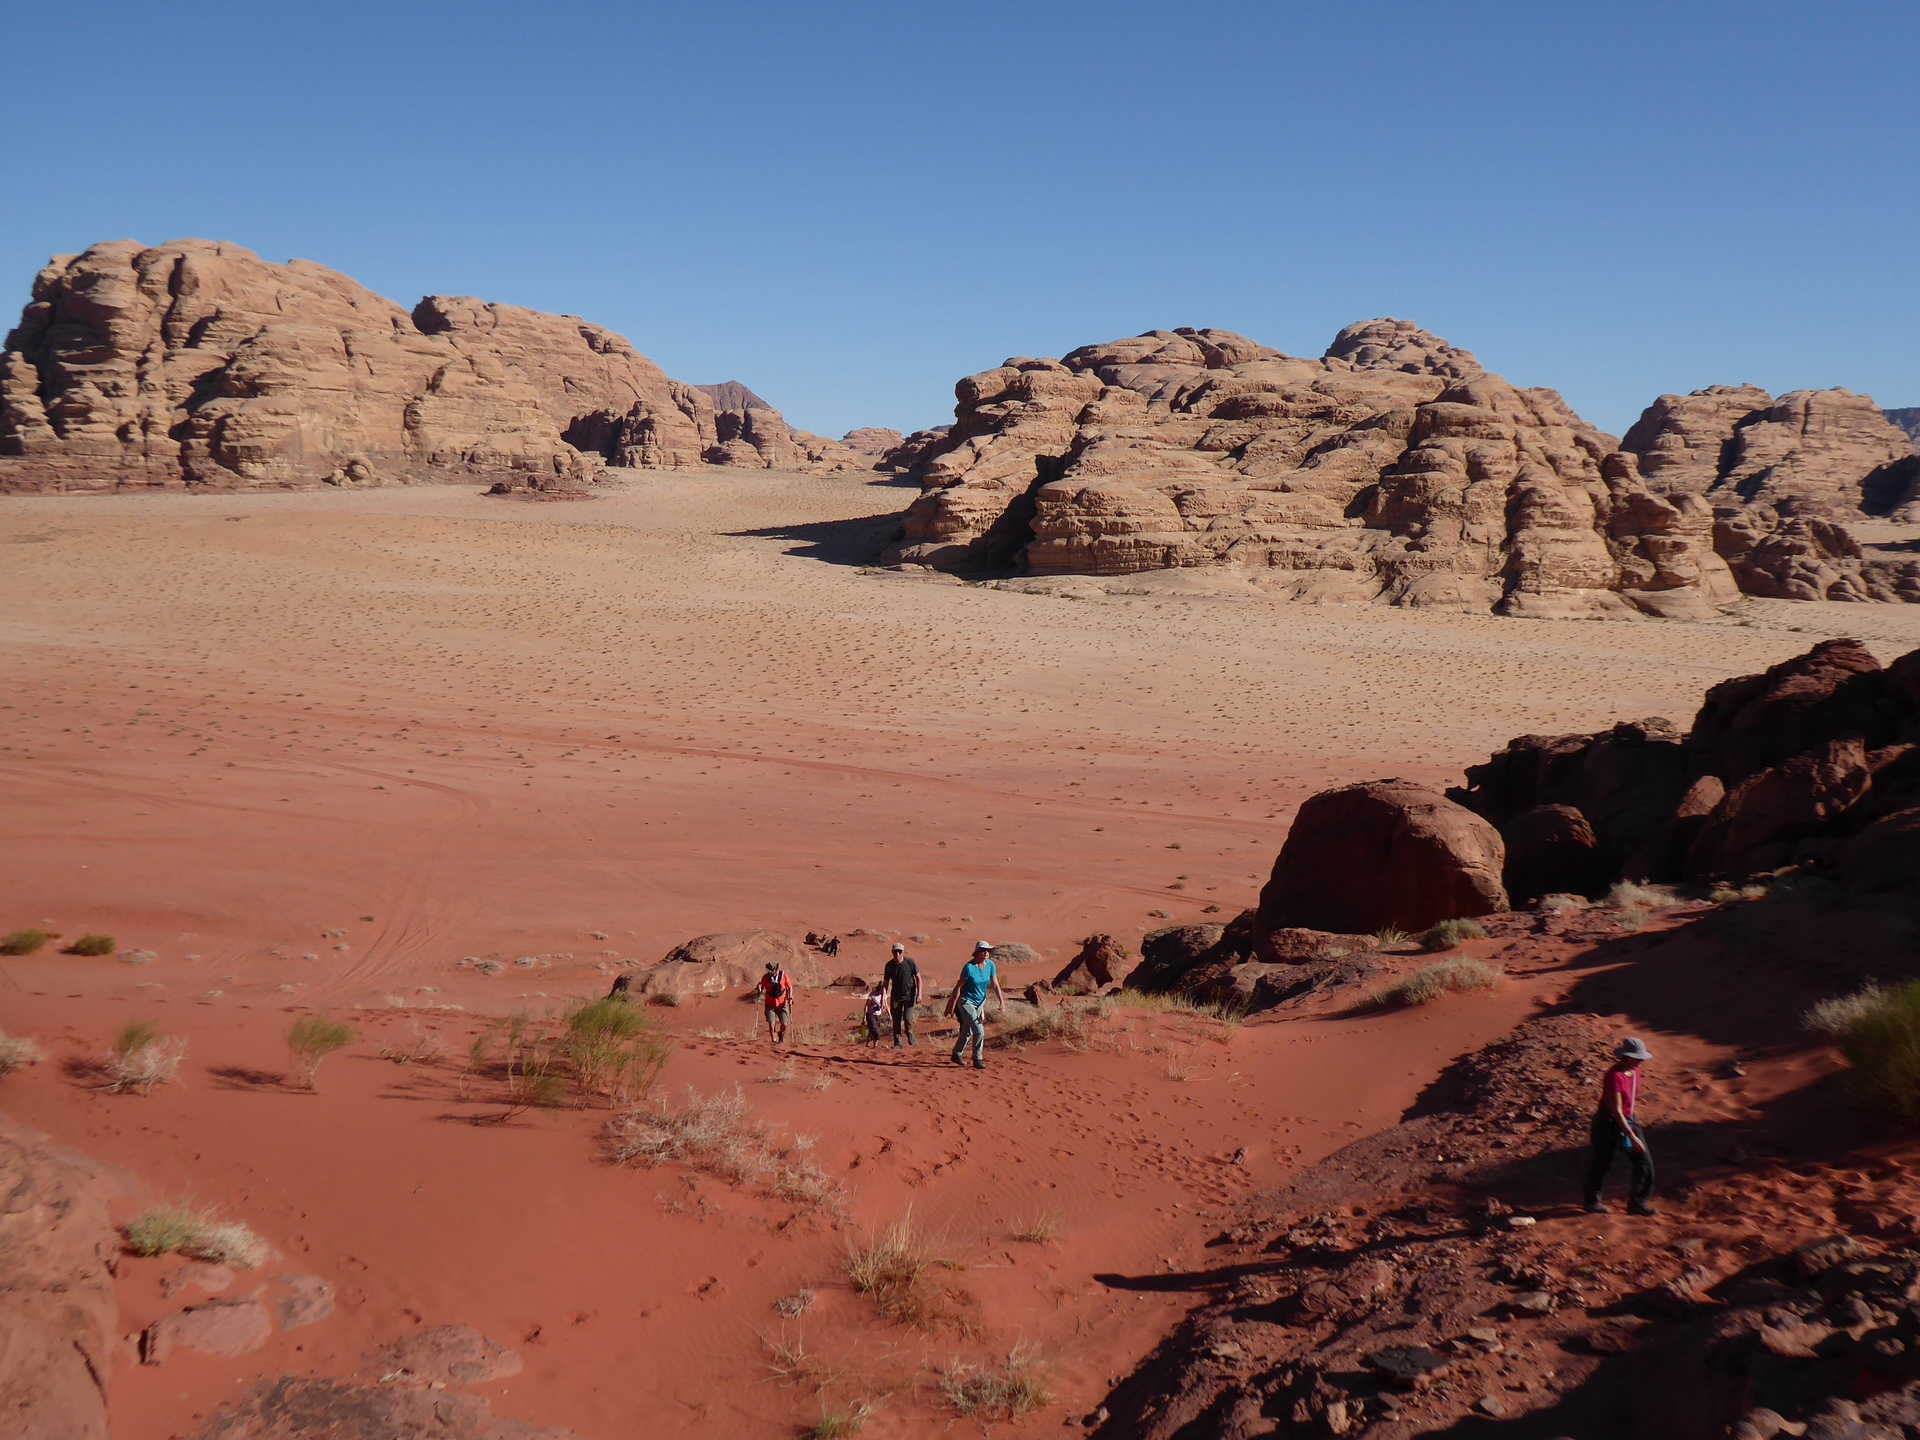 Randonnée et découverte dans le désert de Wadi Rum